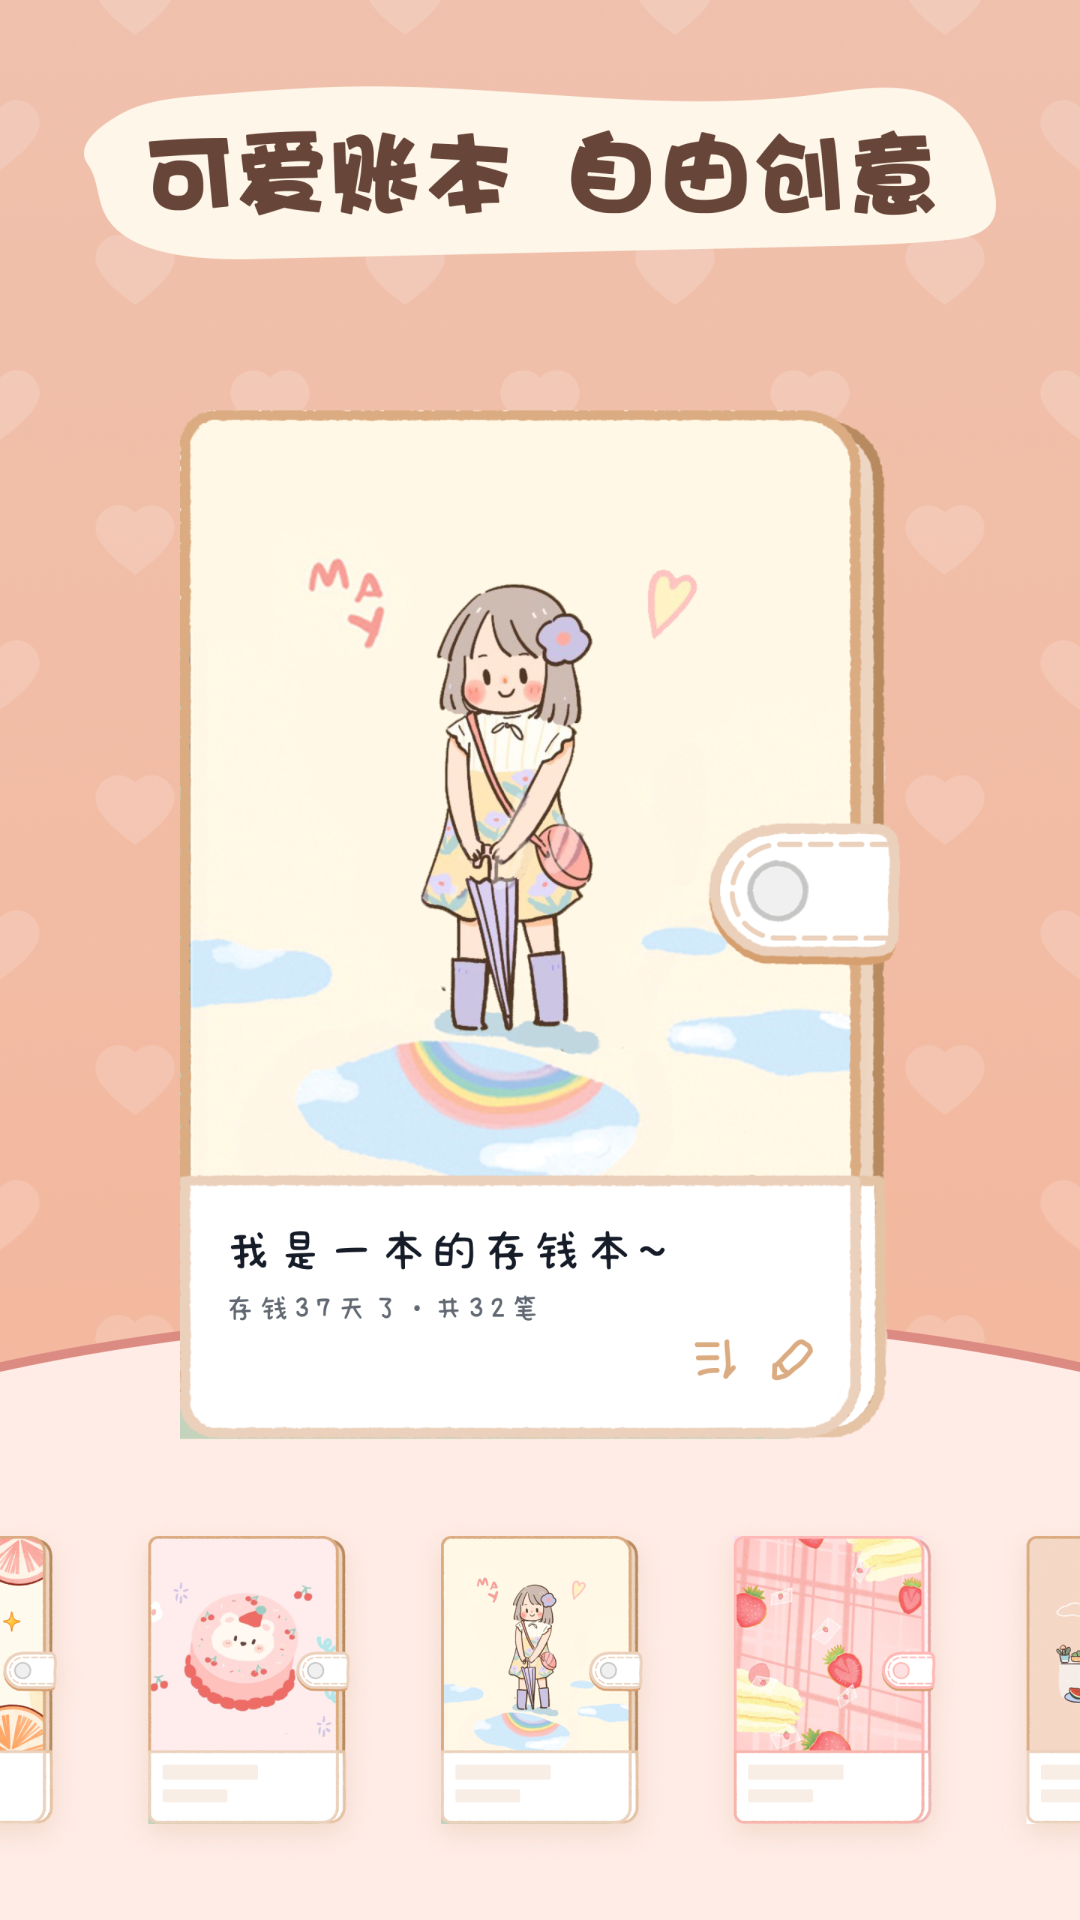 恋恋记账app1.3.4